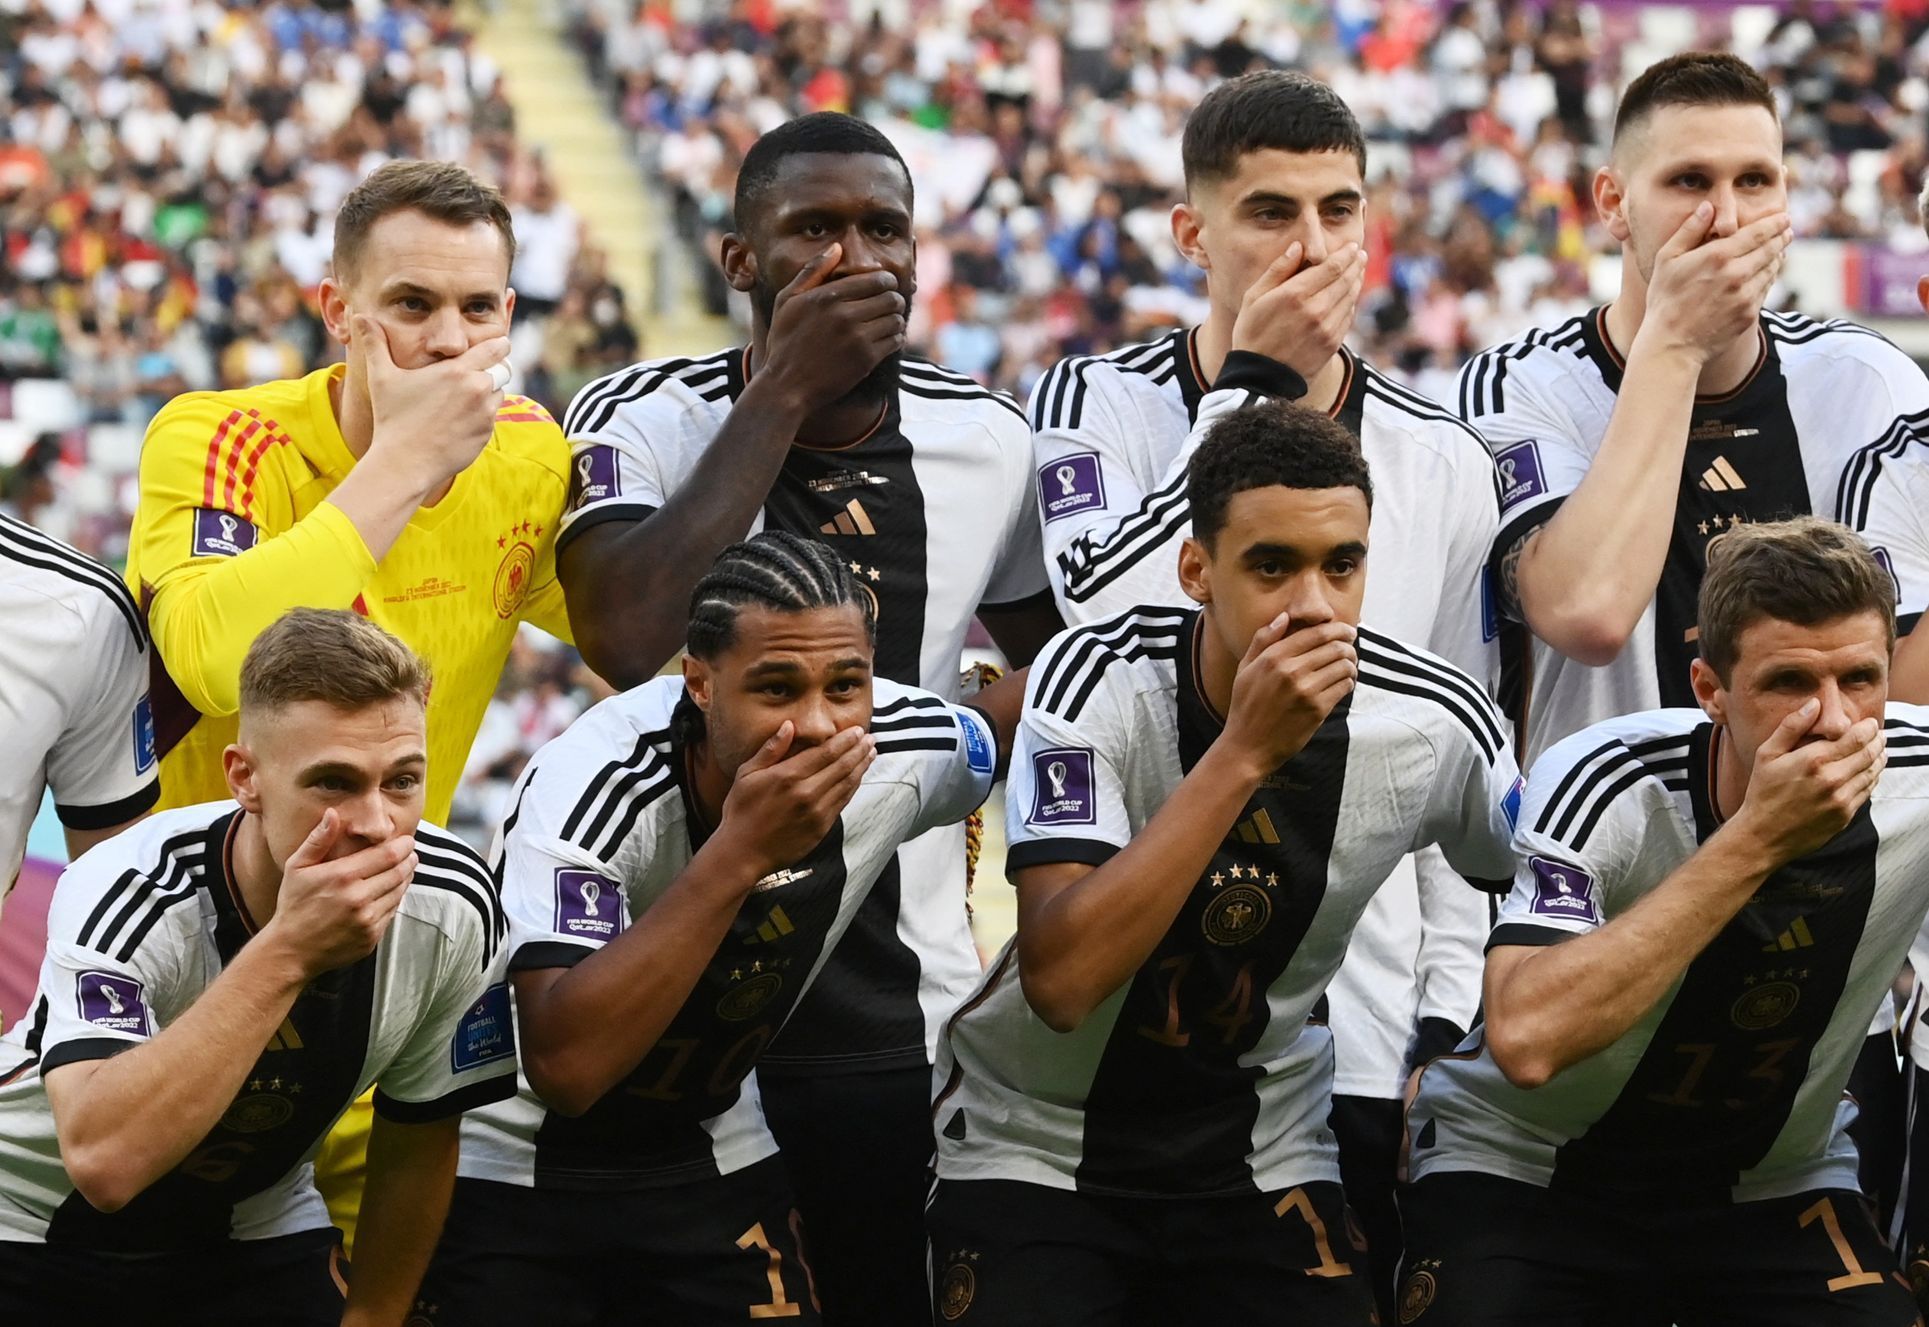 Němci si na fotografii před zápasem s Japonci zakryli ústa